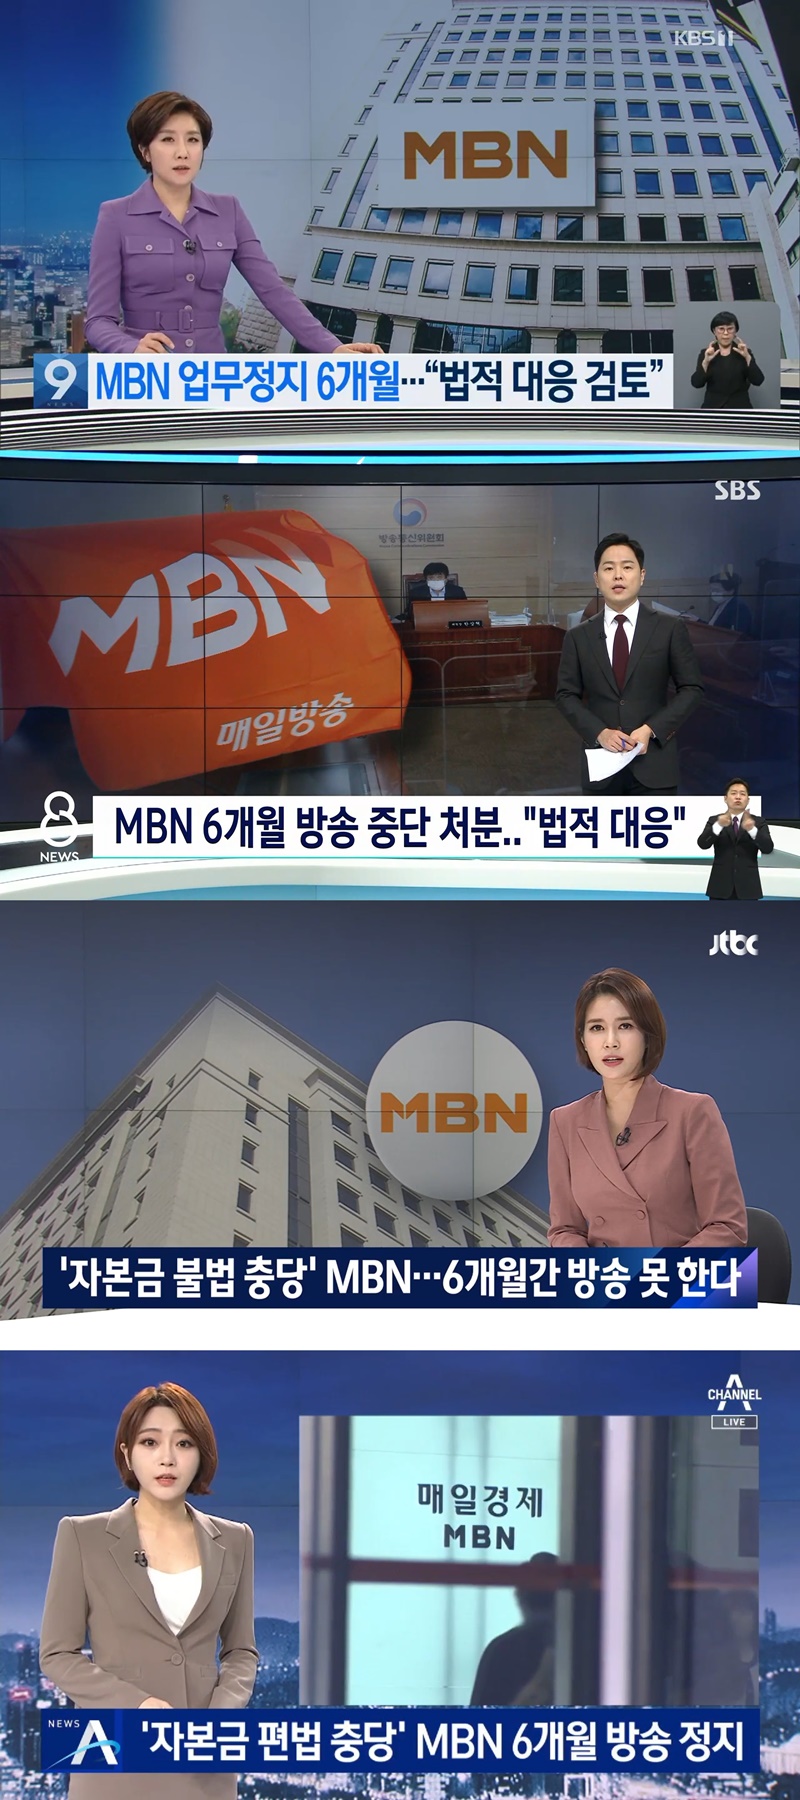 ▲위쪽부터 KBS ‘뉴스9’, SBS ‘8뉴스’, JTBC ‘뉴스룸’ 채널A ‘뉴스A’ 보도화면 갈무리.